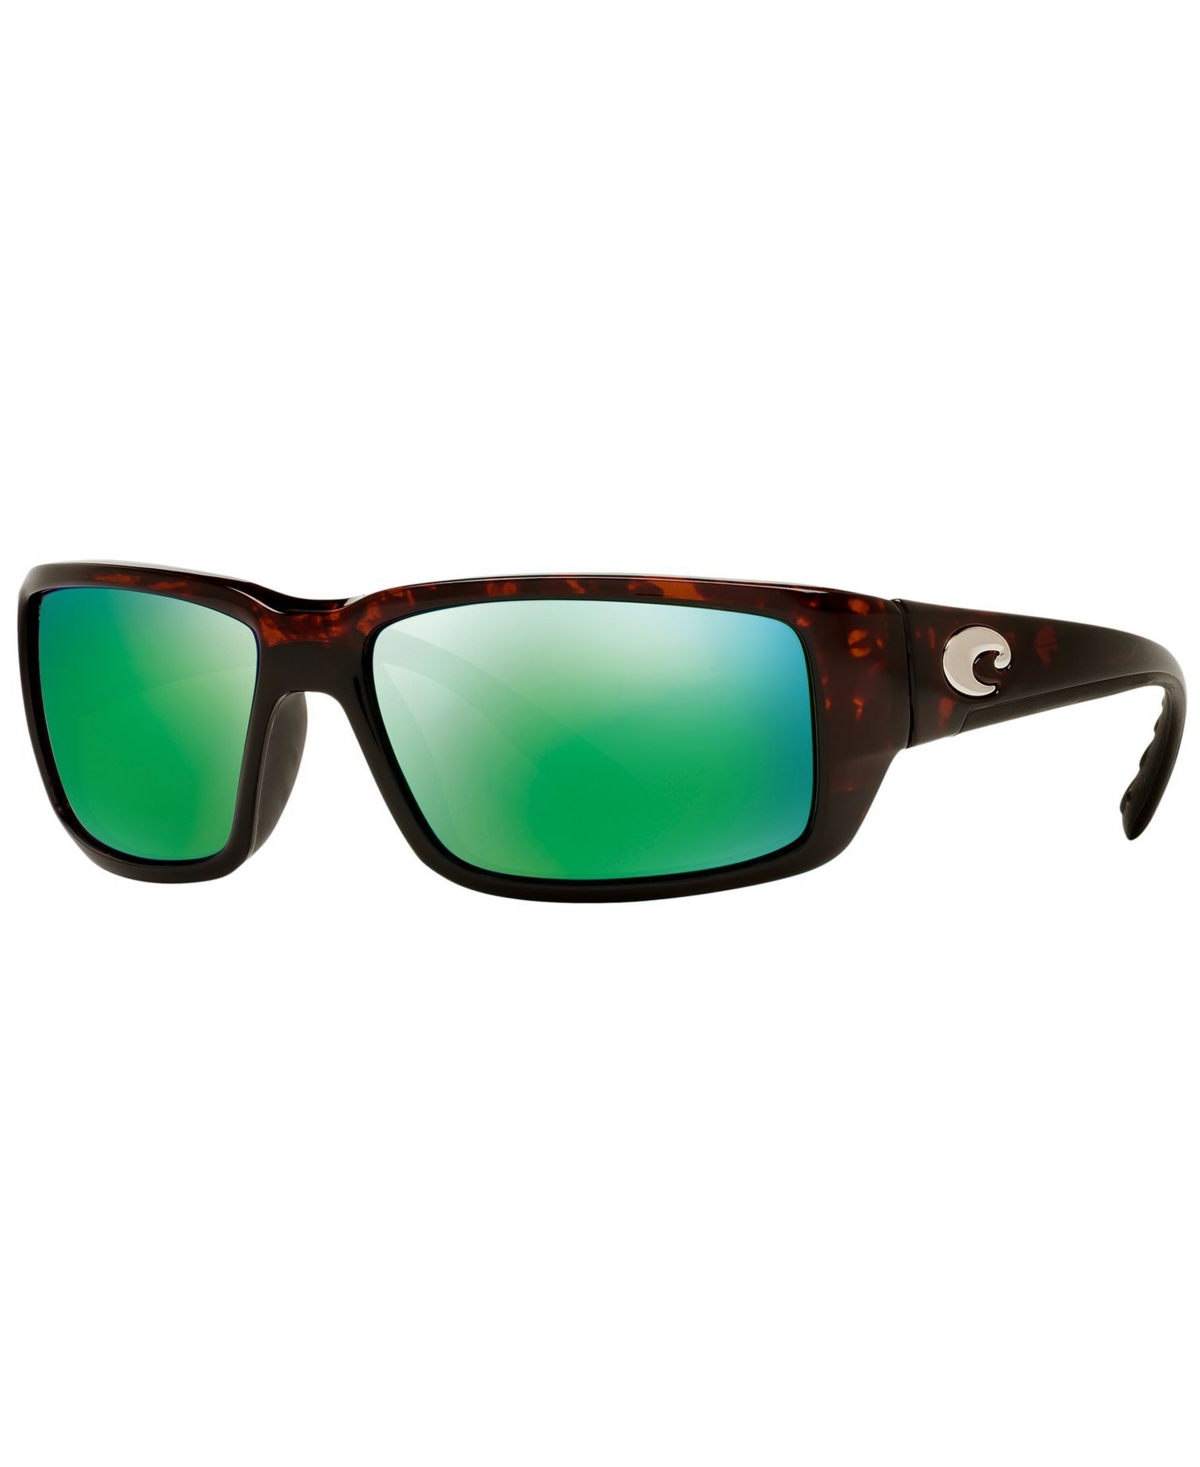 Costa Del Mar Polarized Sunglasses, Fantail 59p In Tortoise,green Mirror Polar